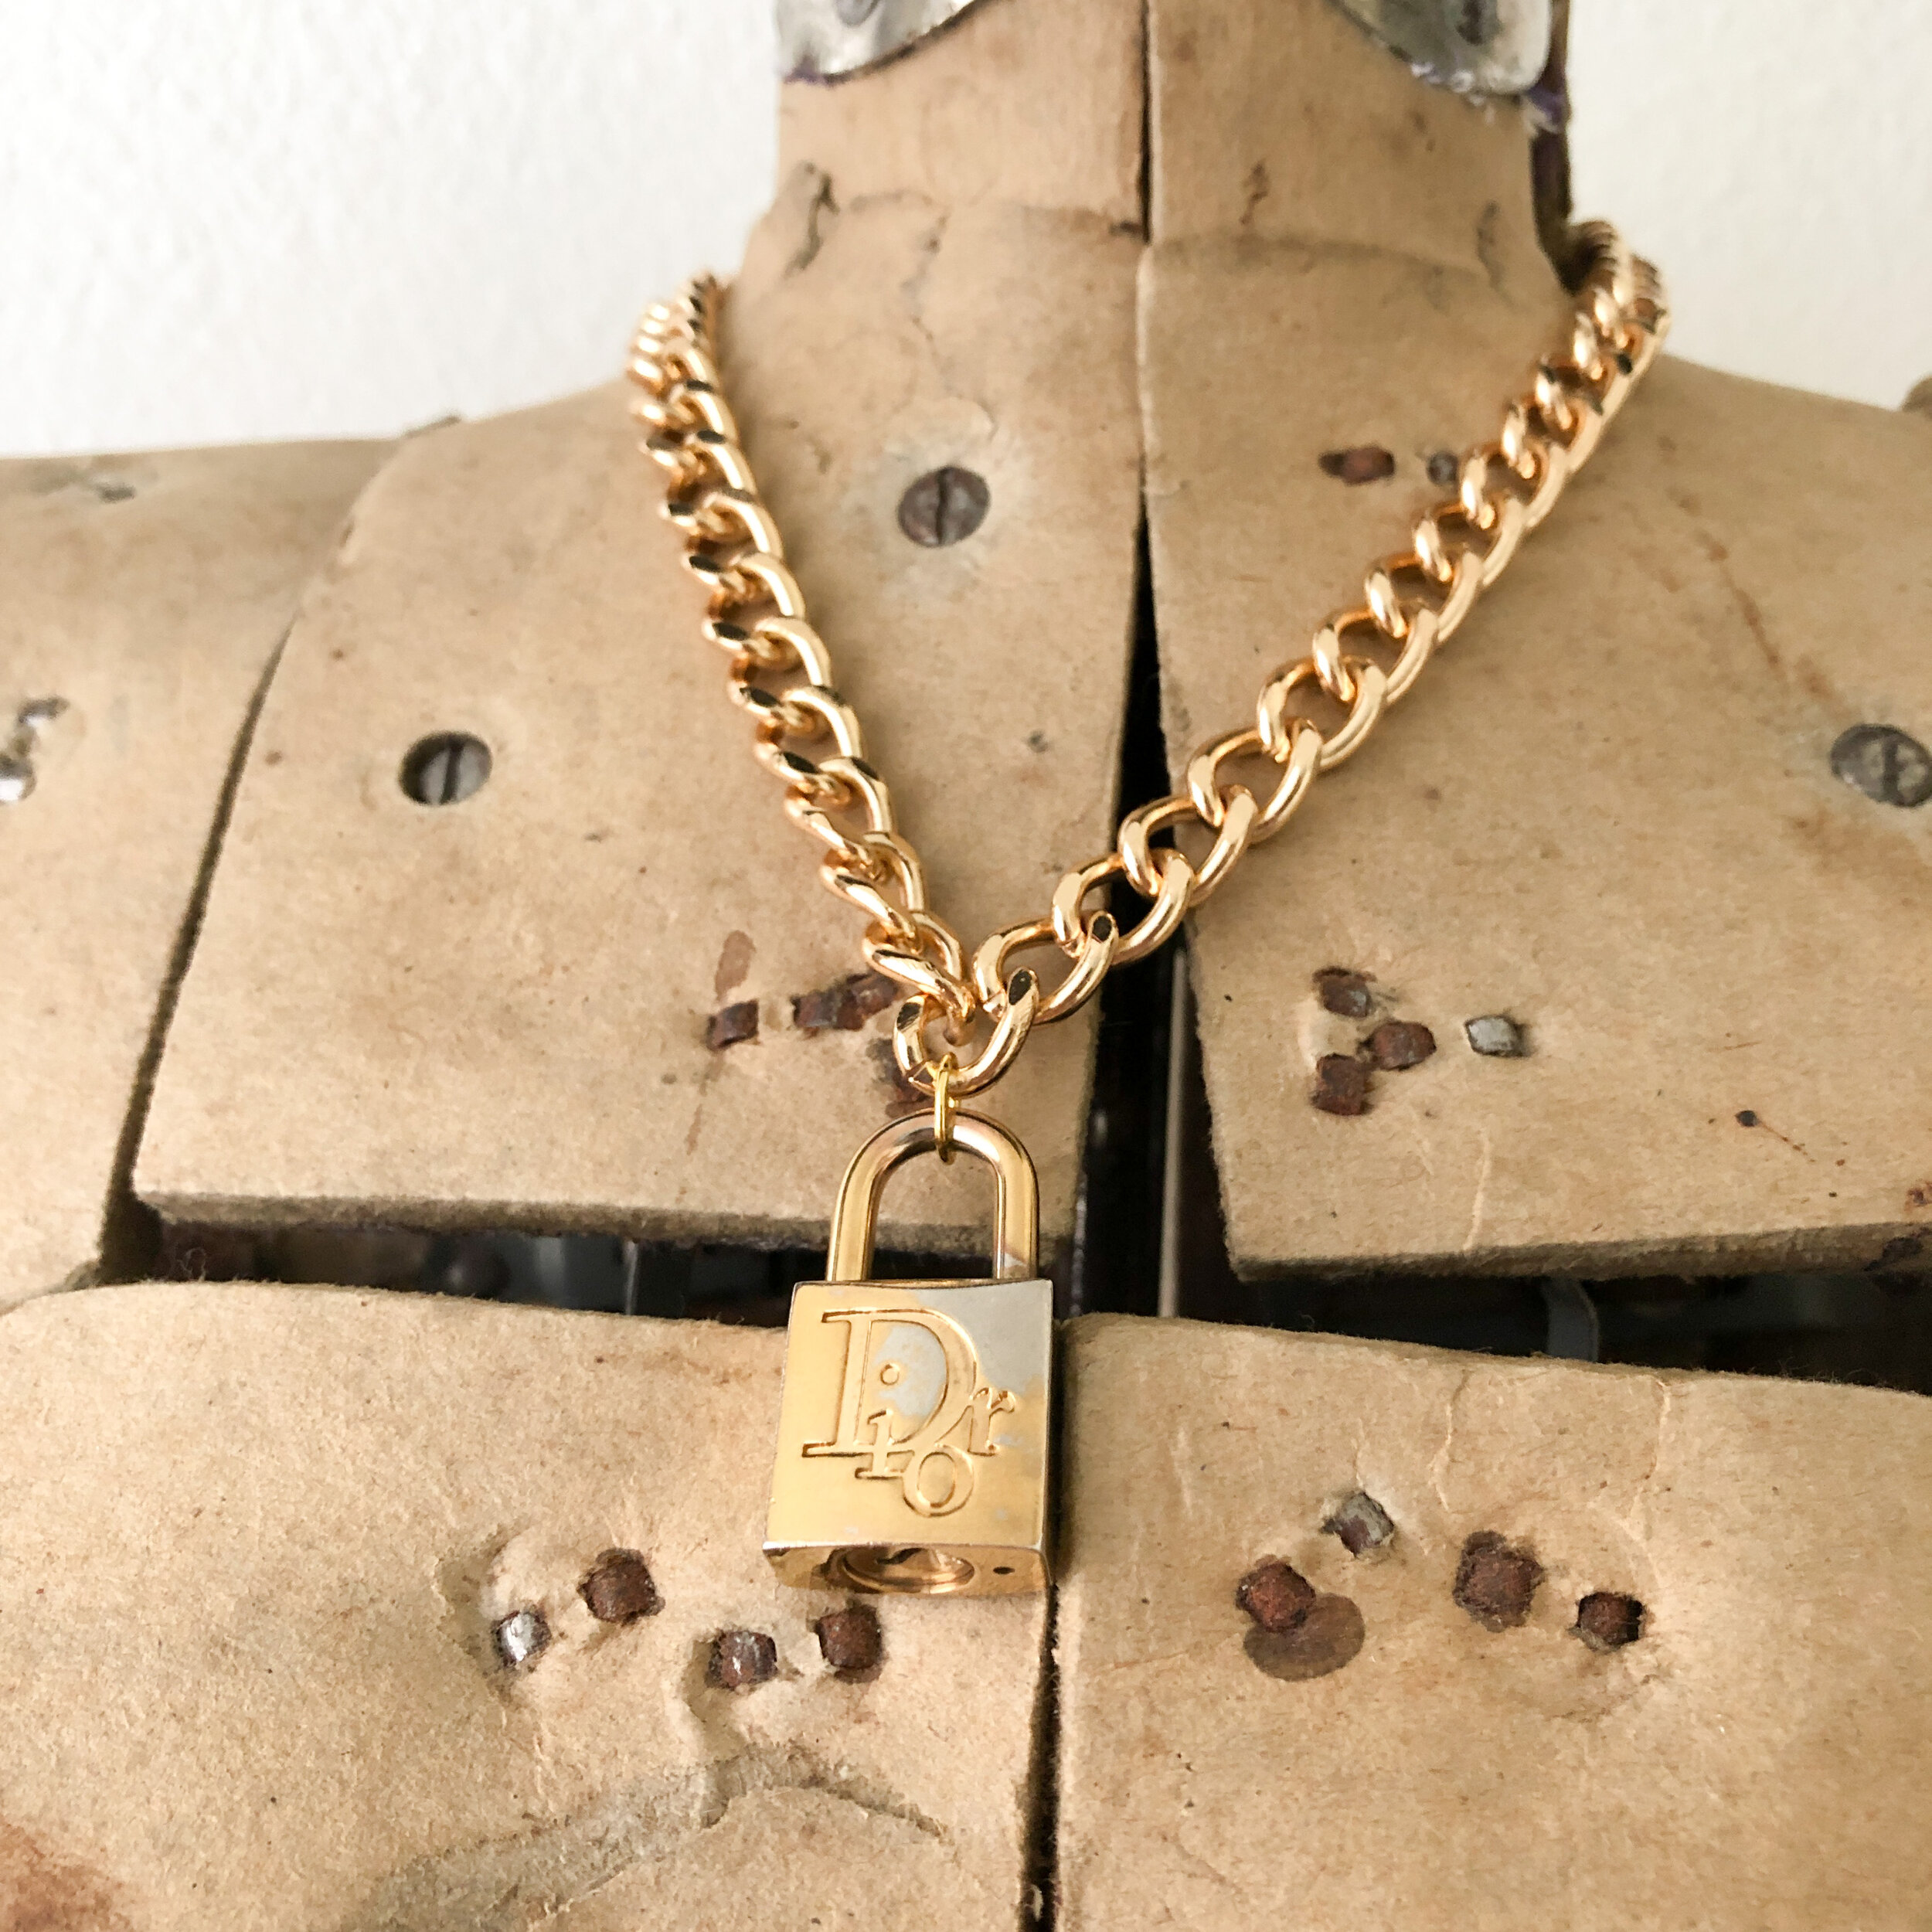 dior necklace lock